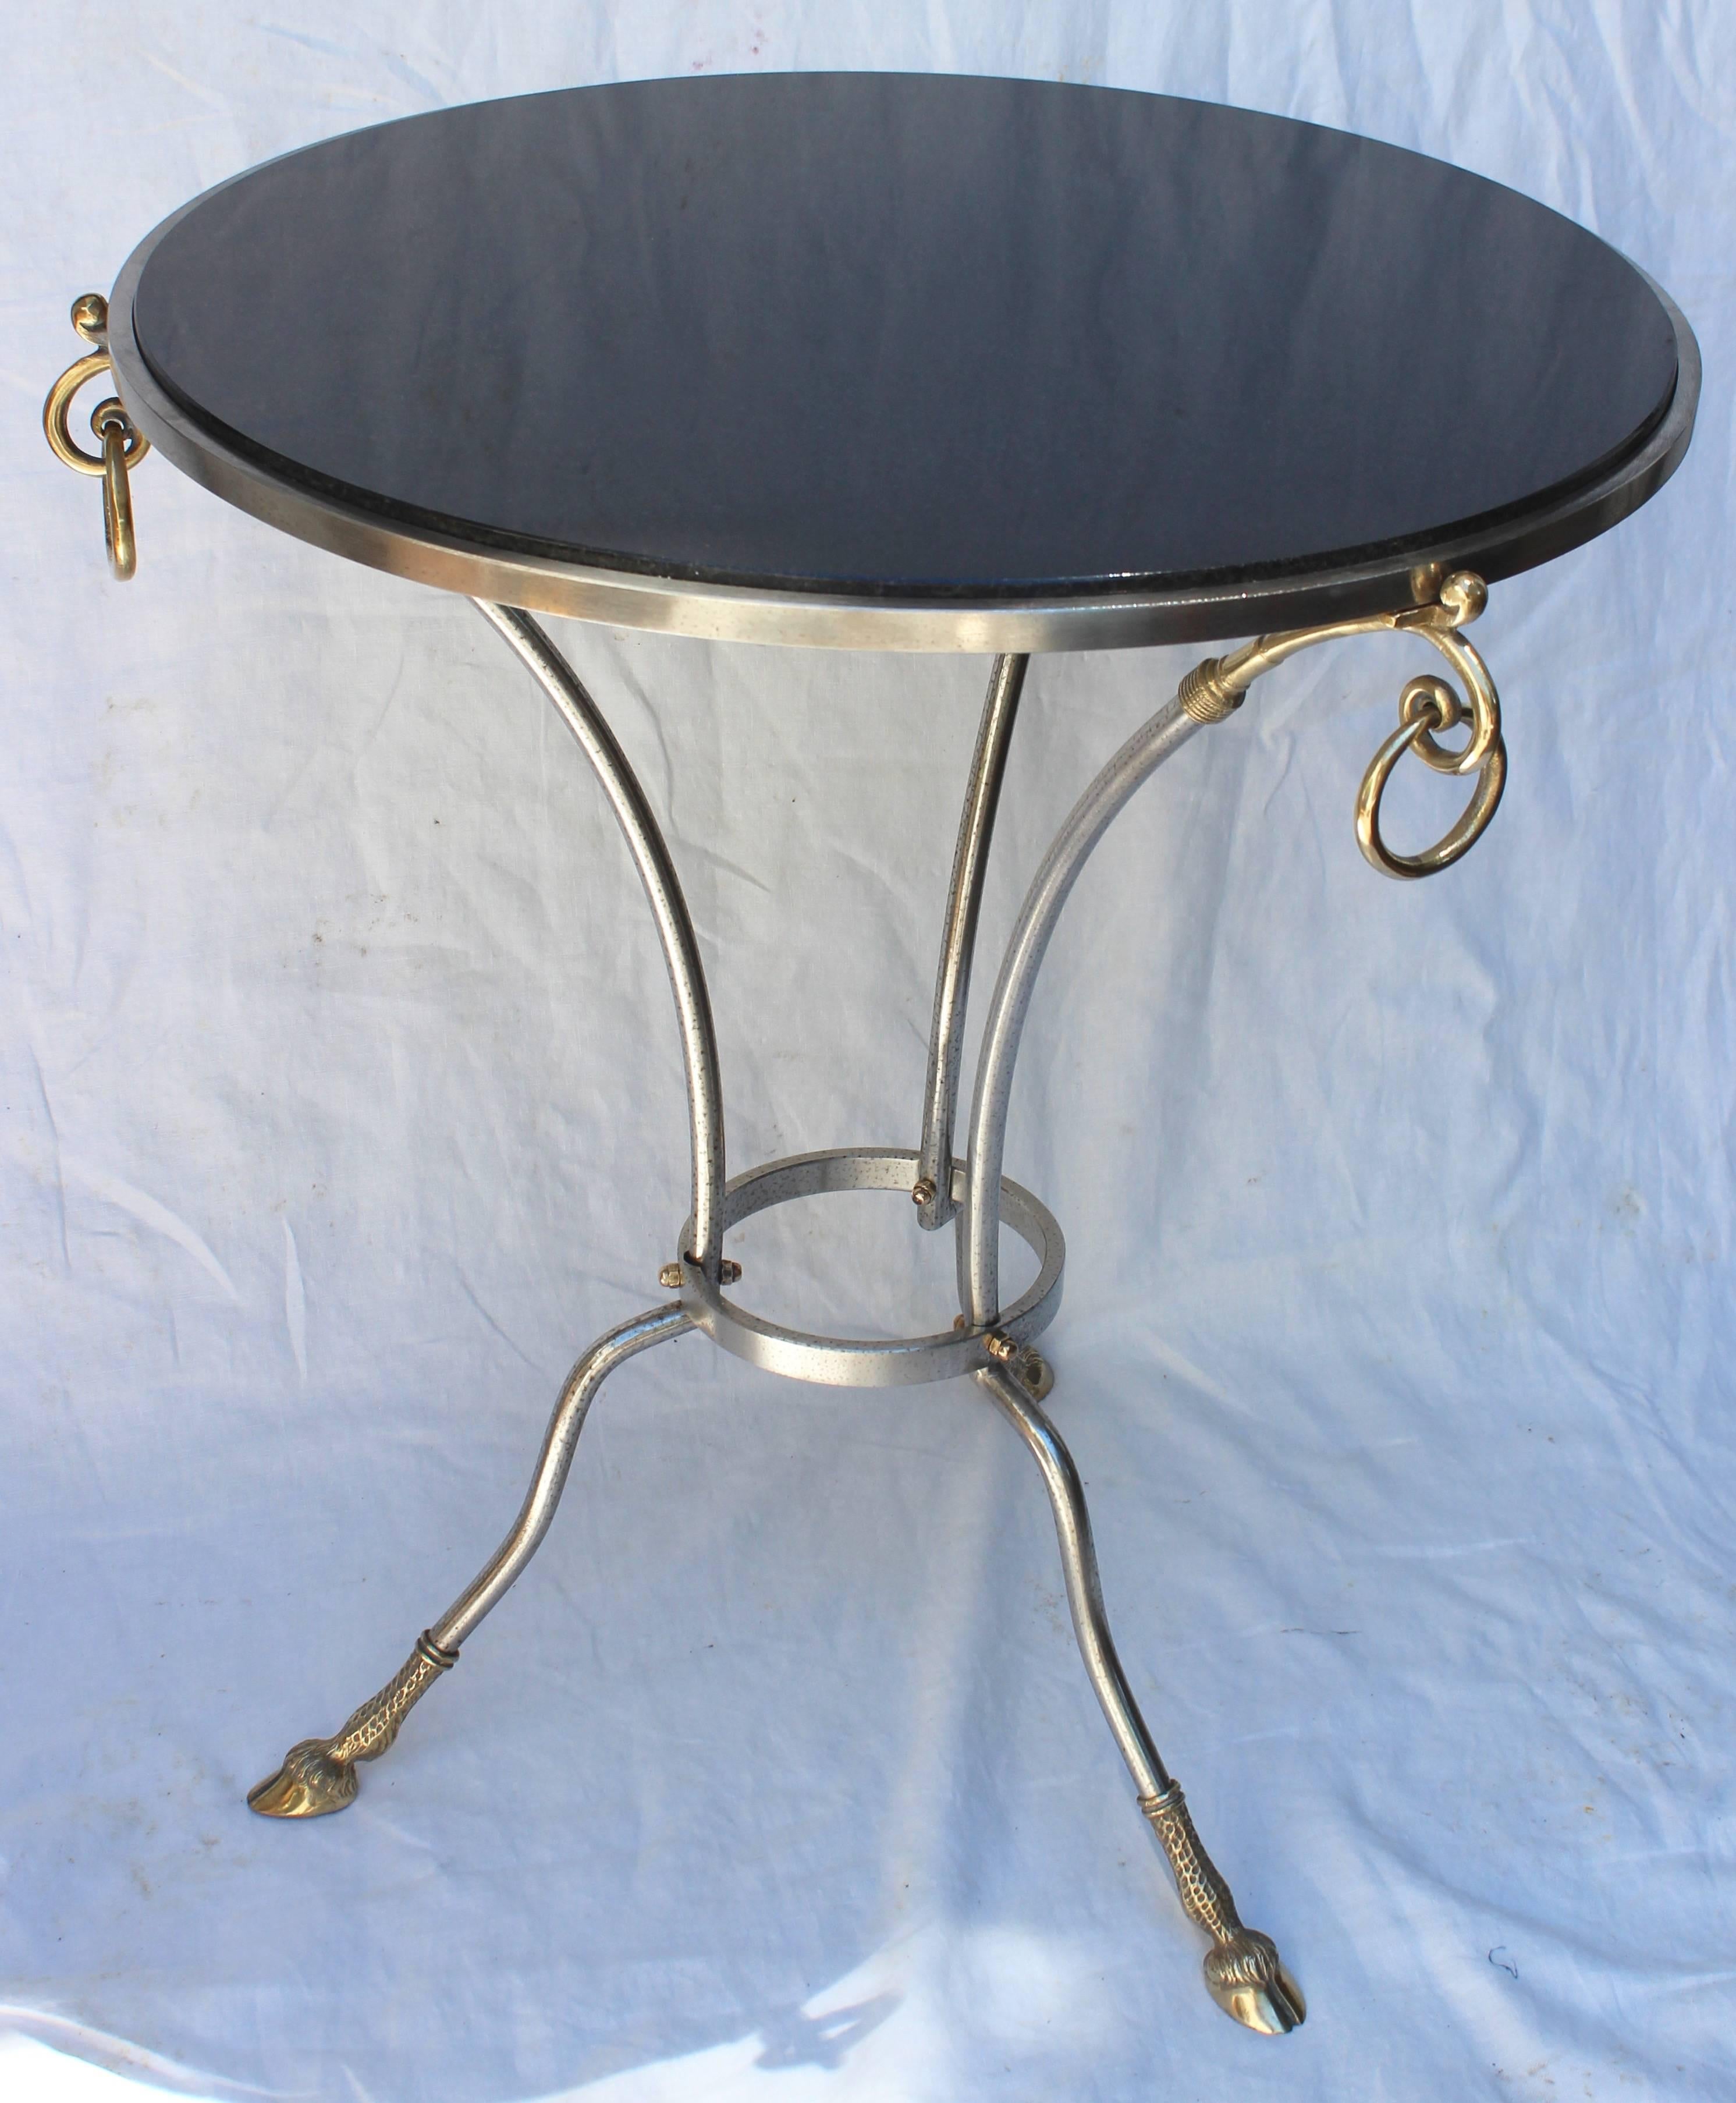 Runder Tisch im Jansen-Stil. Schwarze Granitplatte mit Metall- und Messingfuß und Messingringen.

die Tischplatte hat einen Durchmesser von 23,5